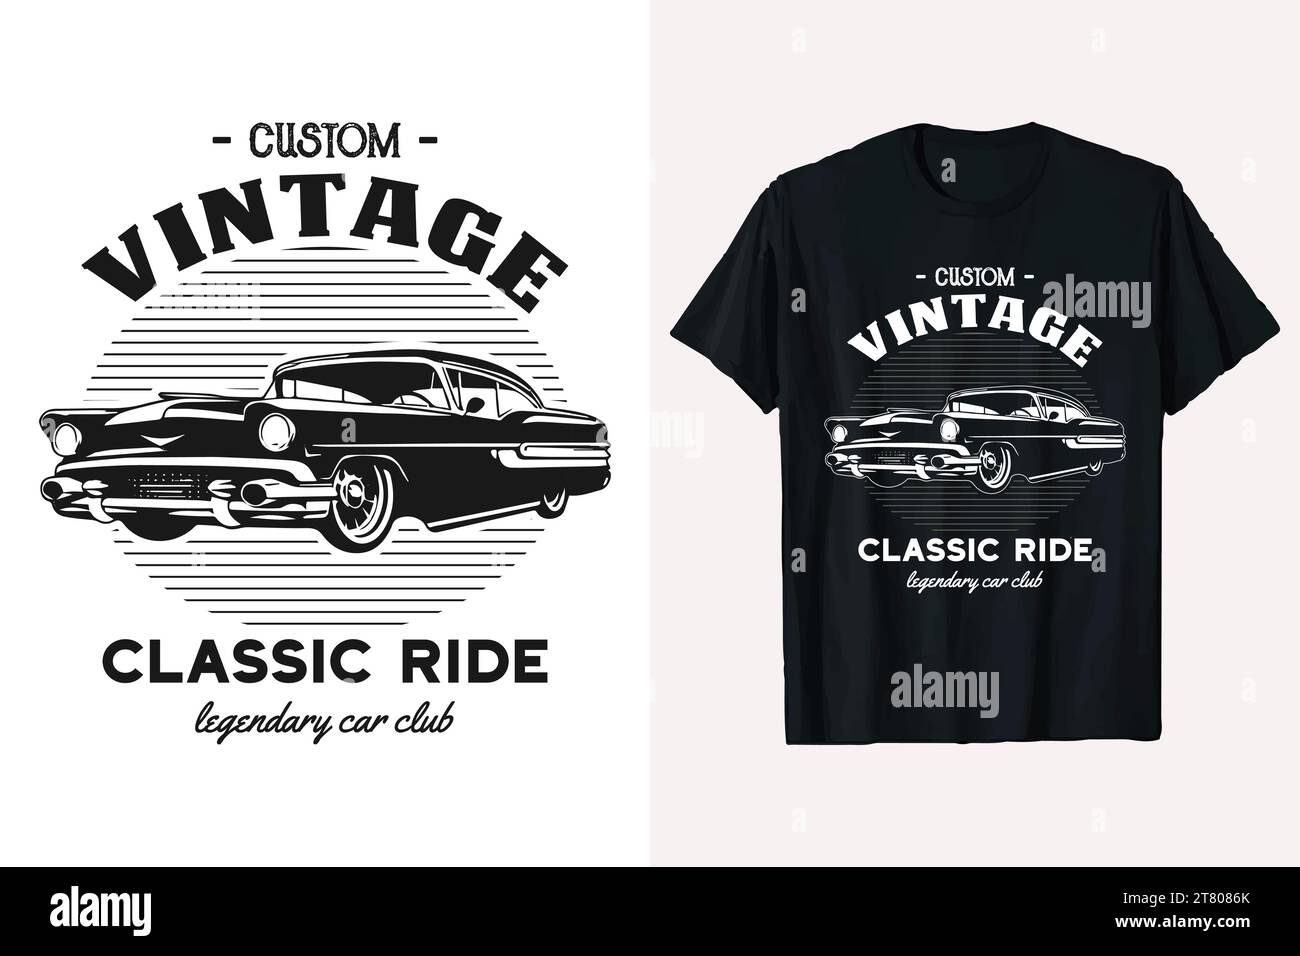 Oldtimer-T-Shirt-Design mit klassischem Fahrwagen. amerikanisches altes Auto T-Shirt Vorlage. Schwarz-weiße Graphic Cars T-Shirt-Prints. Stock Vektor